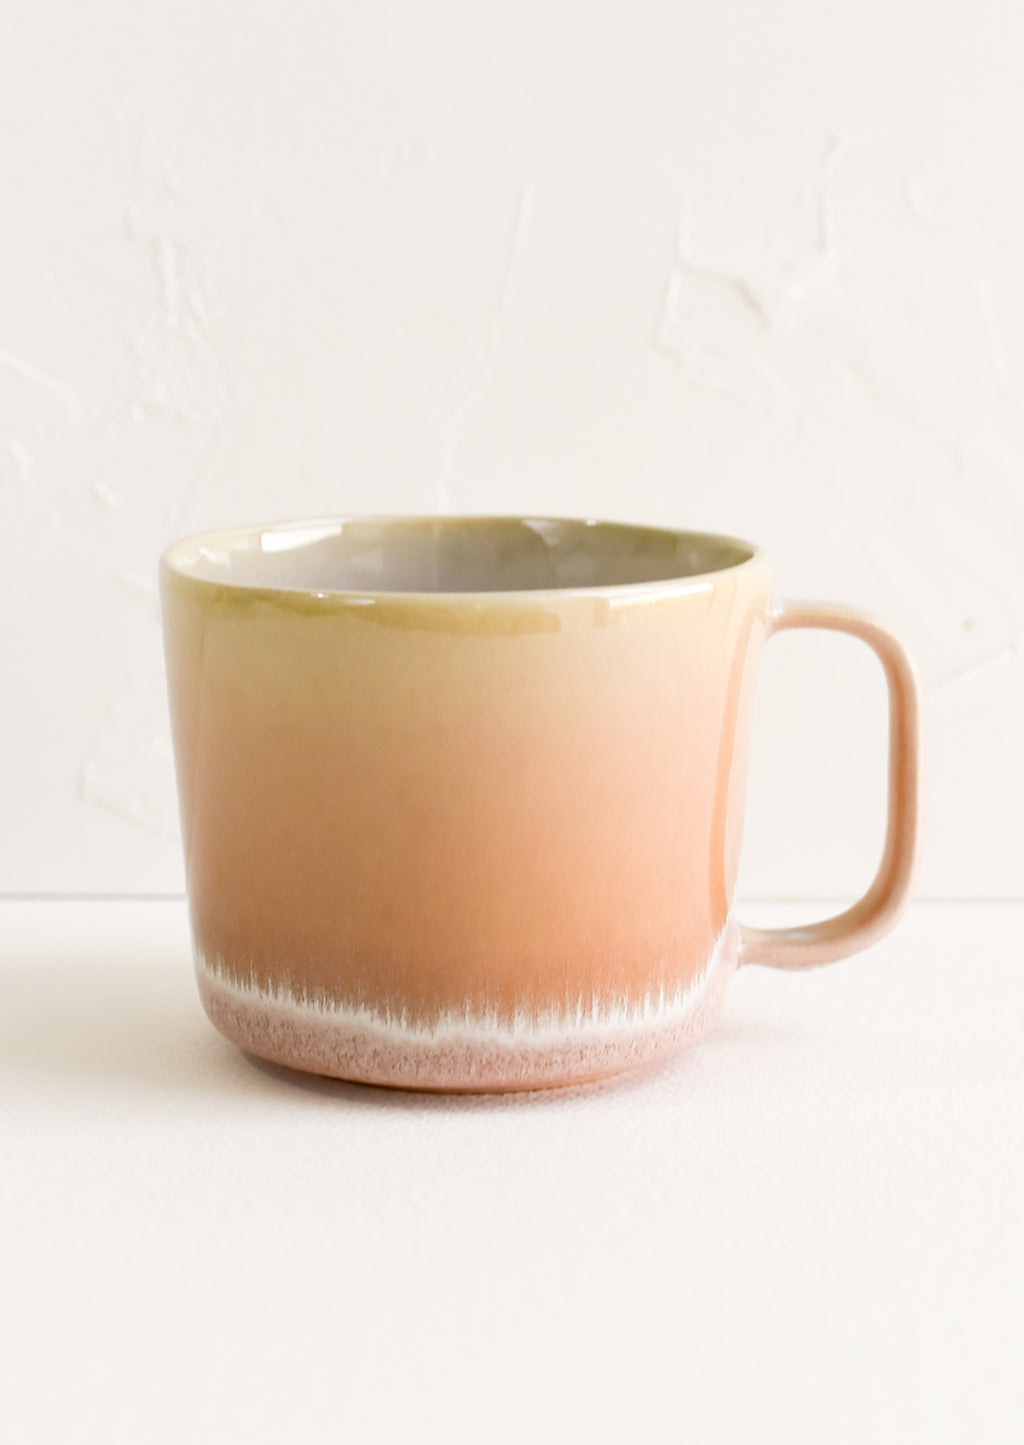 Dawn: A ceramic mug in peach with ombre glaze.